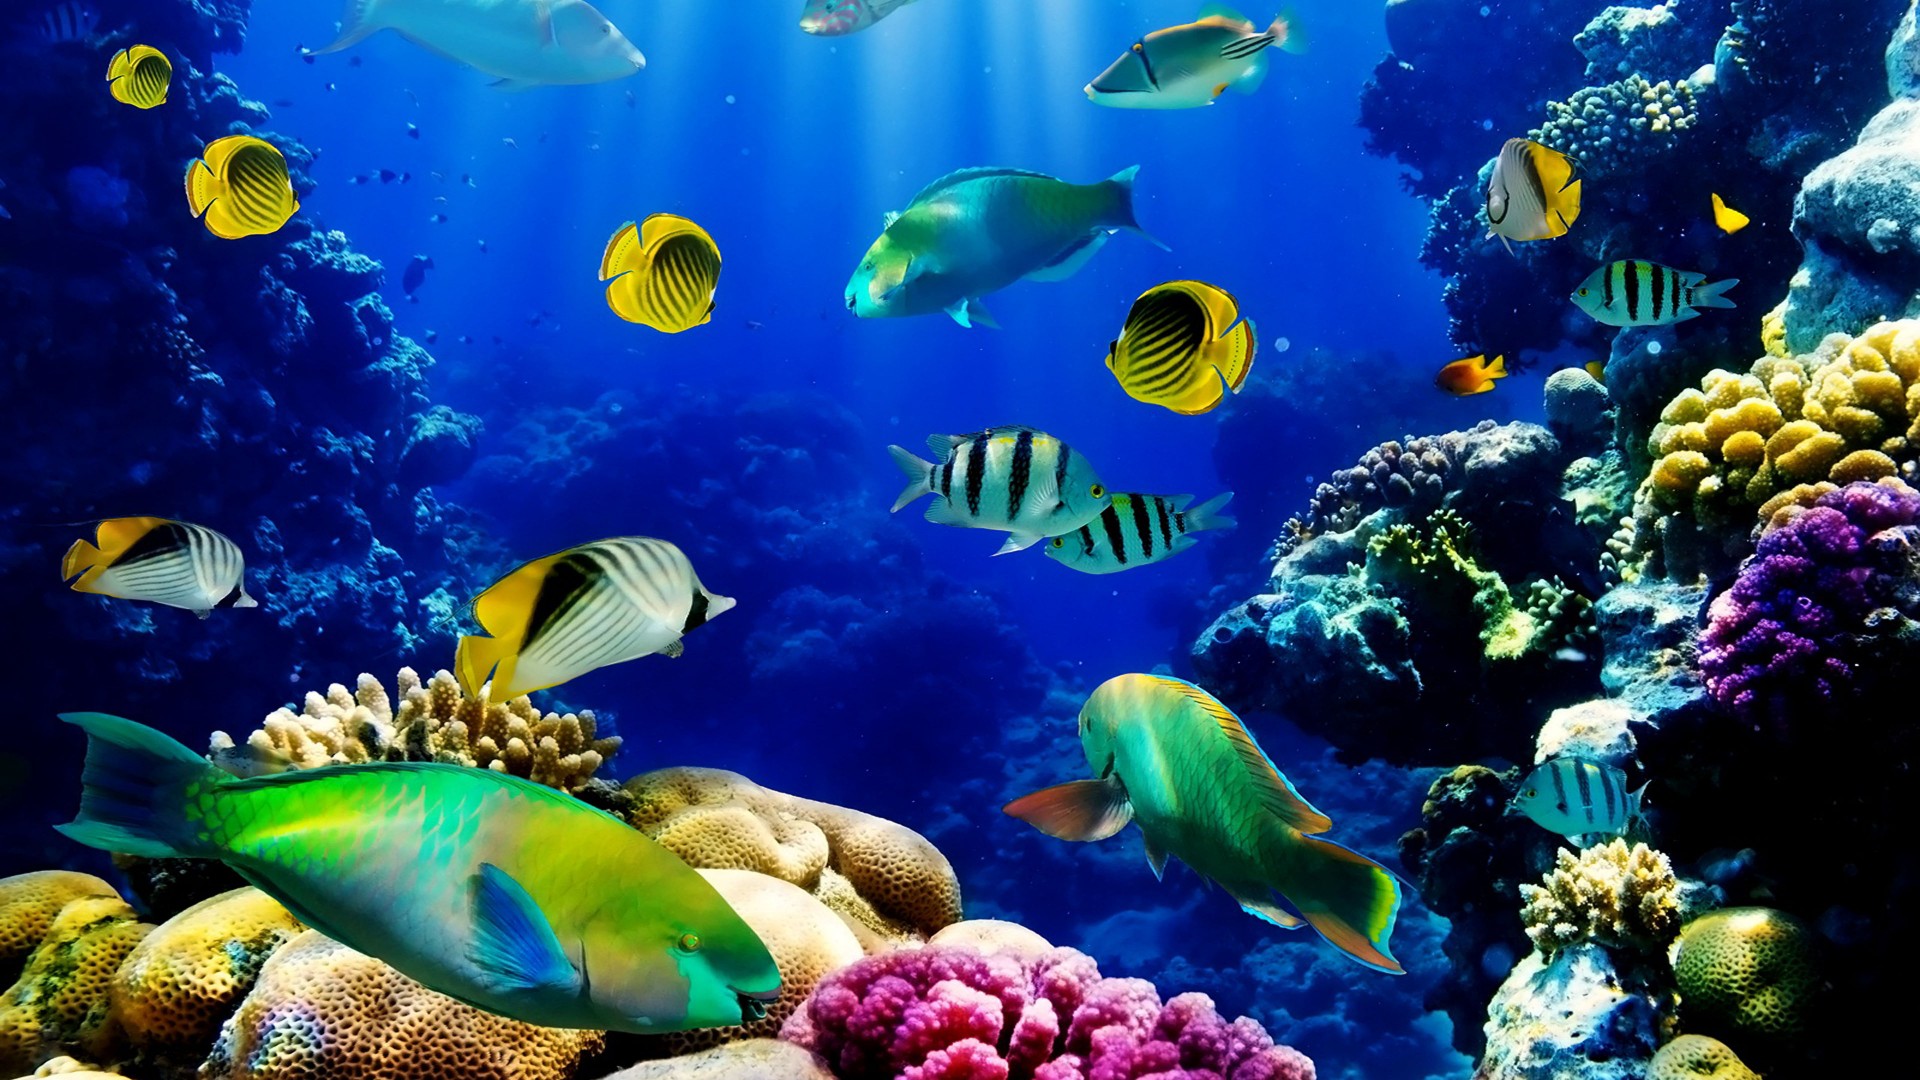 océan hd fond d'écran en direct,sous marin,récif de corail,biologie marine,poissons de récifs coralliens,récif